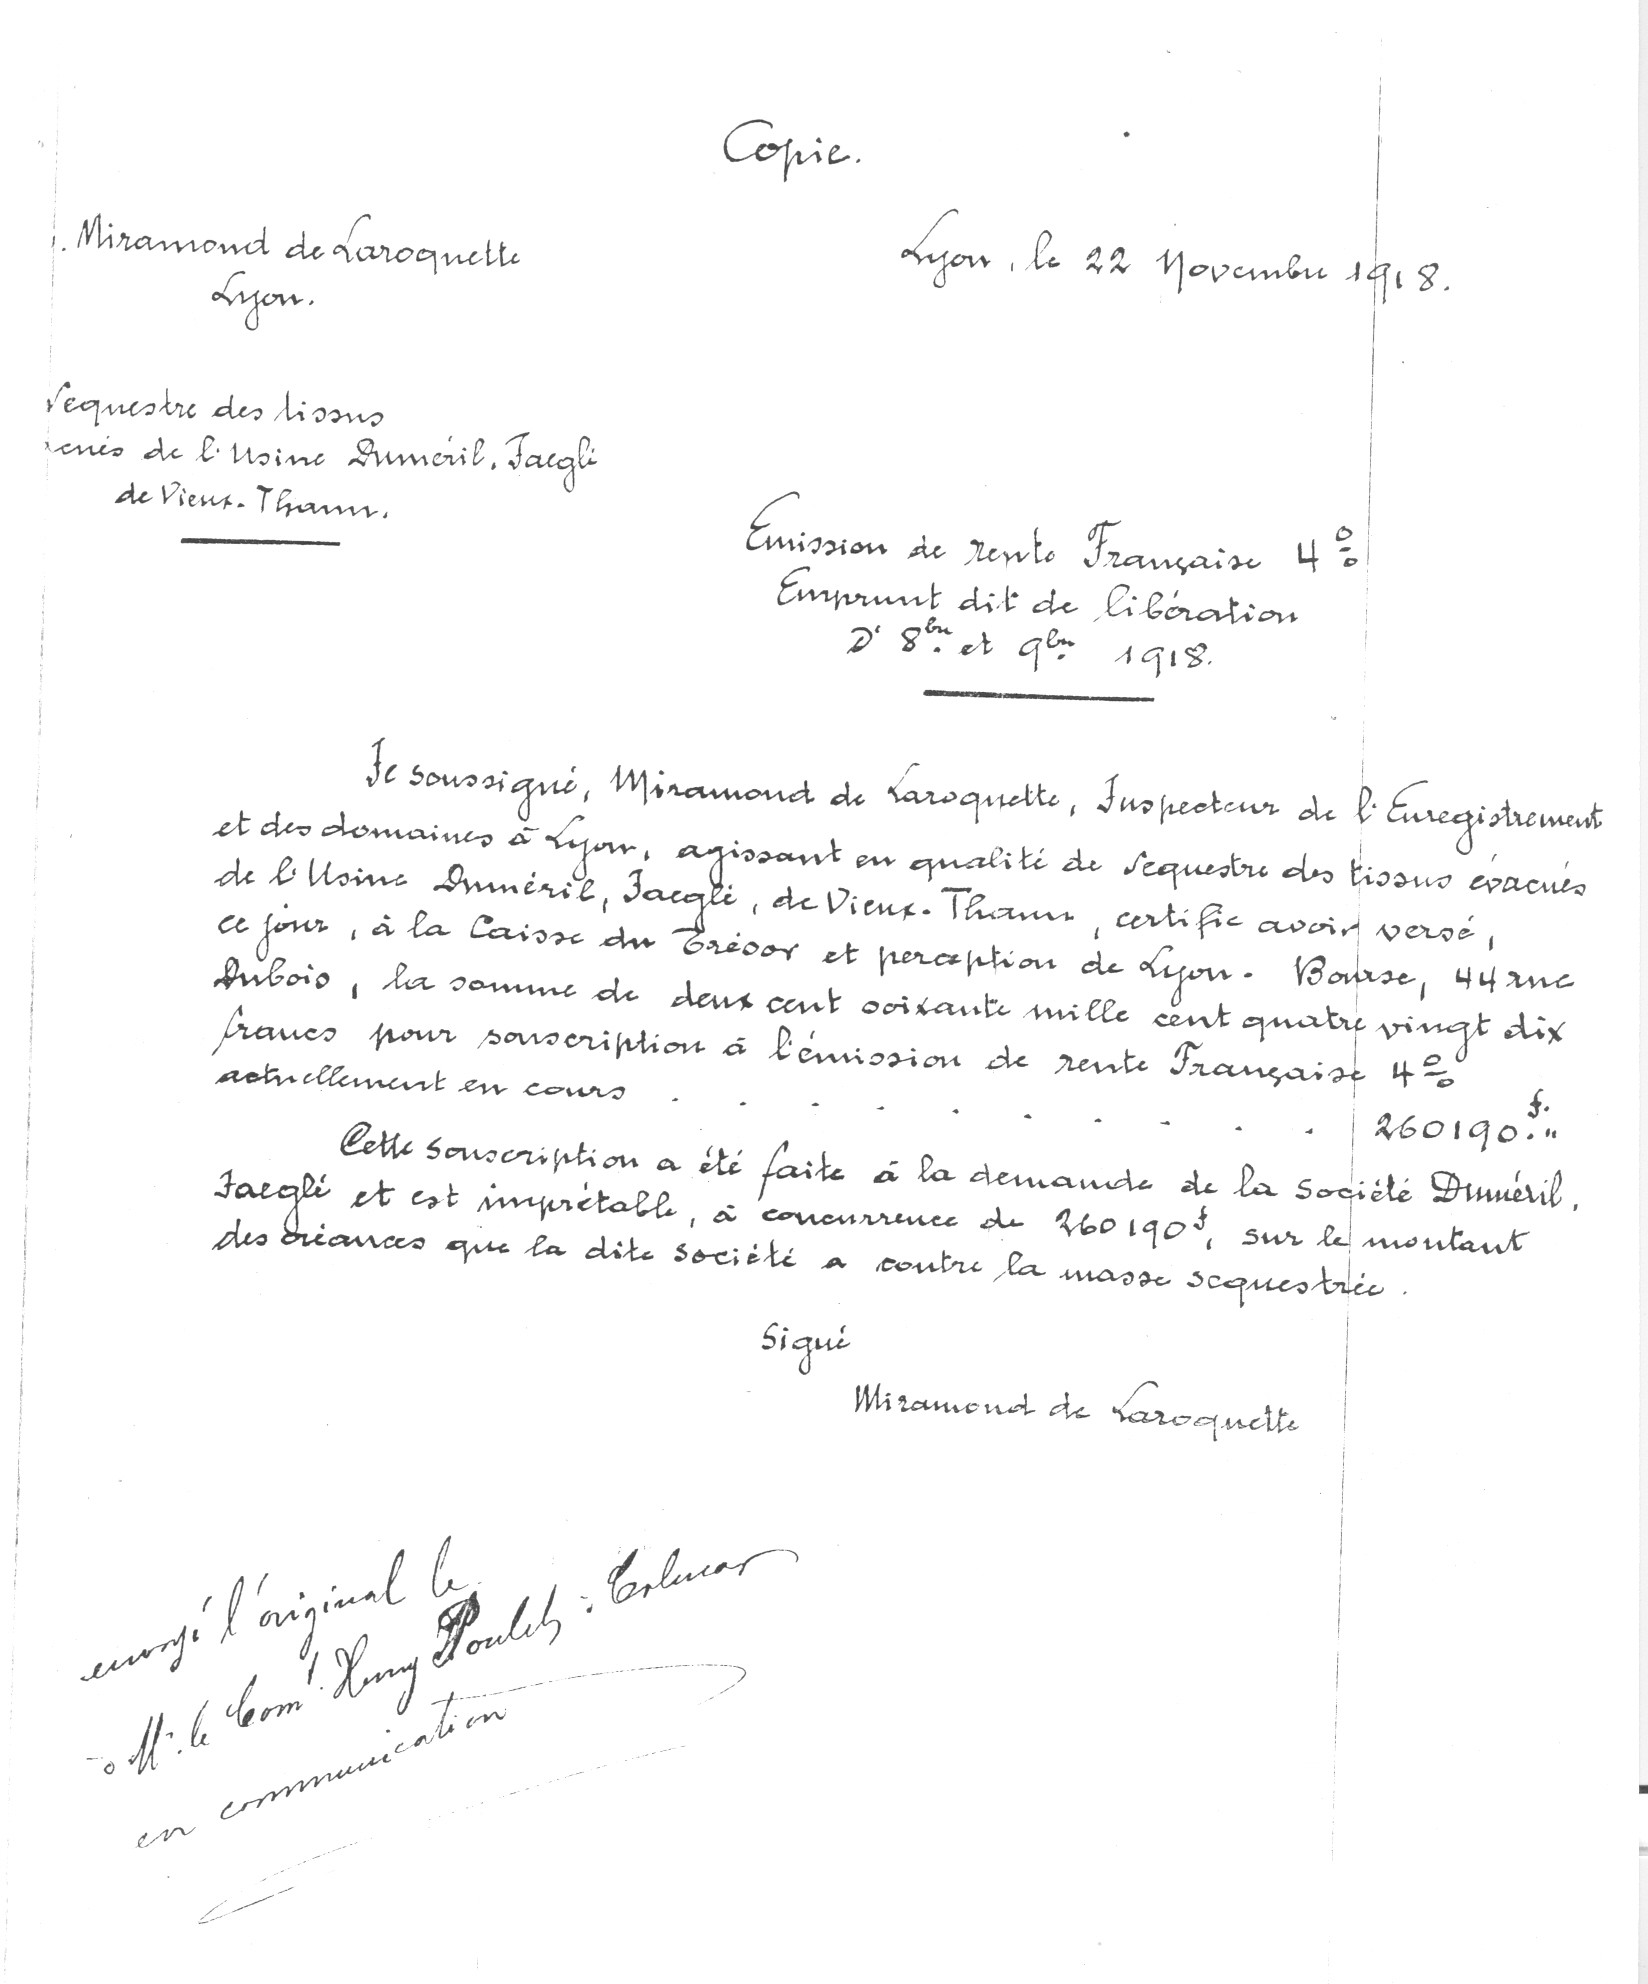 1918 – Copie de l’attestation de souscription à l’emprunt (faite le 22 novembre 1918)